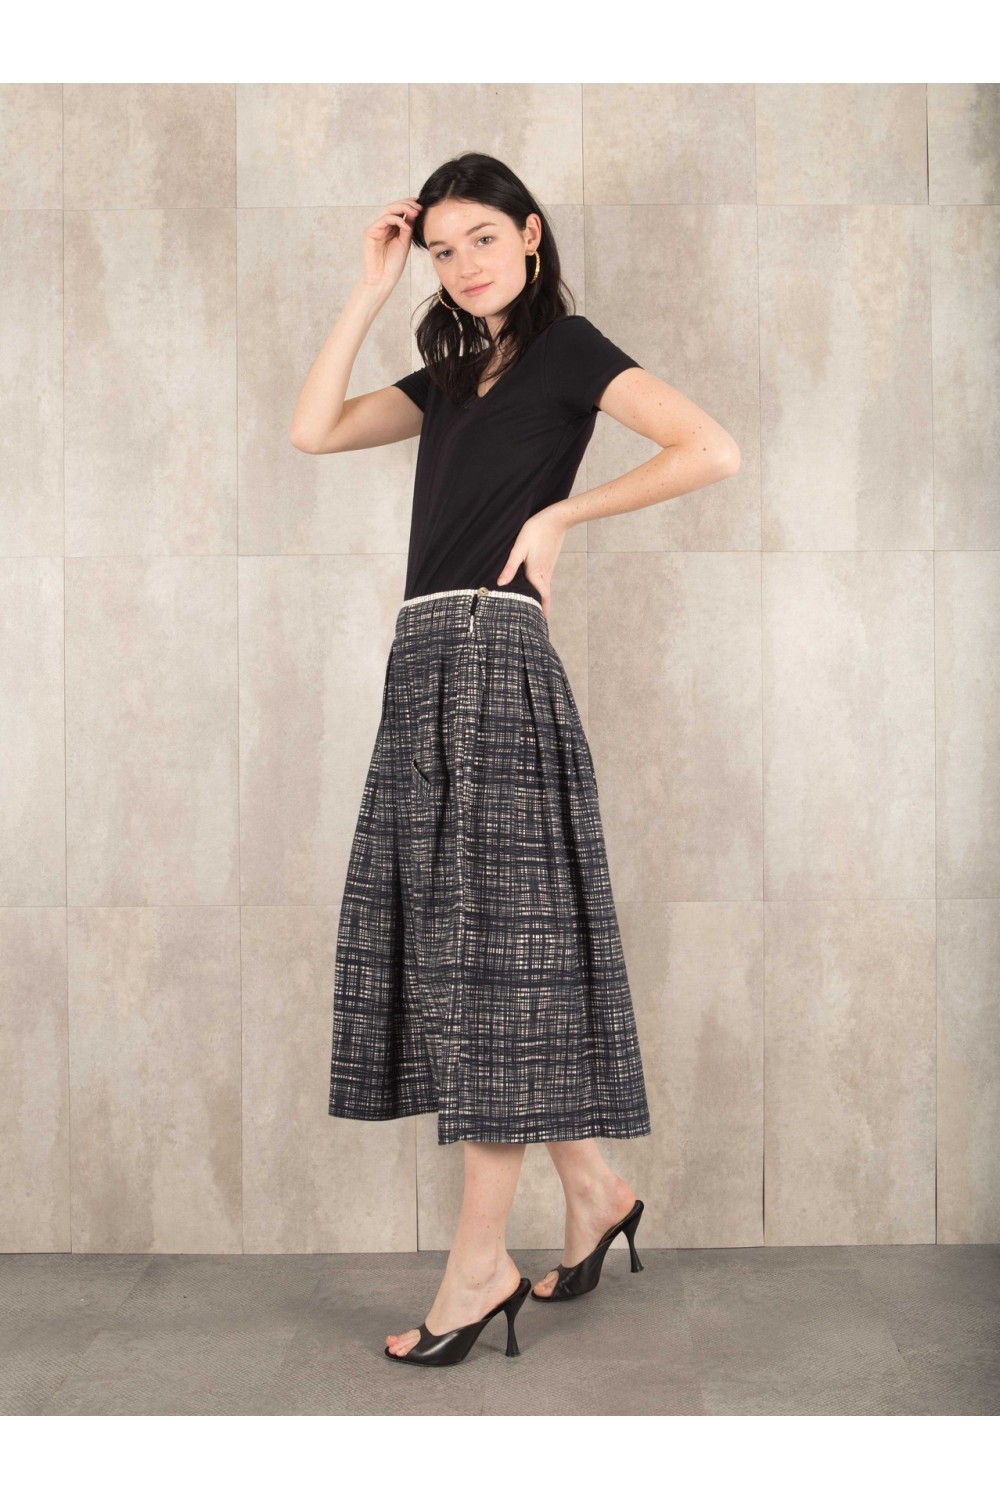 Skirt Digital print  coton linen effect E16-30-CL